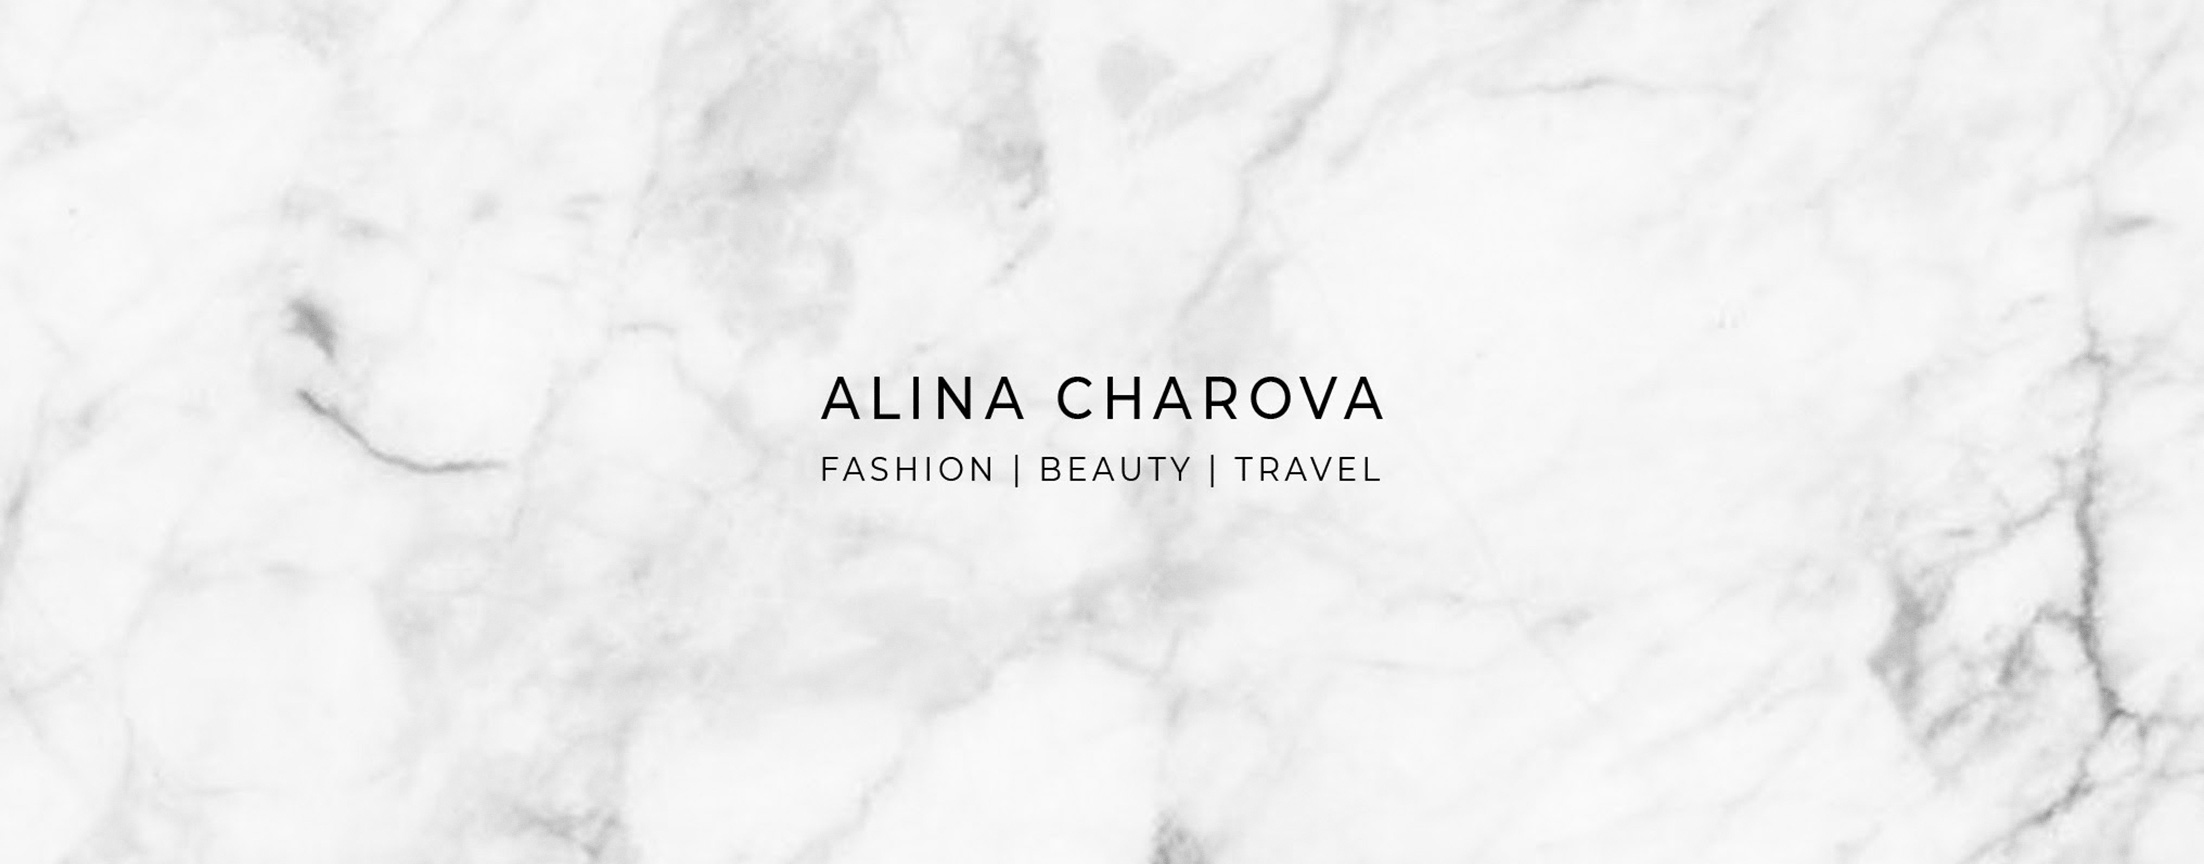 Alina Charova